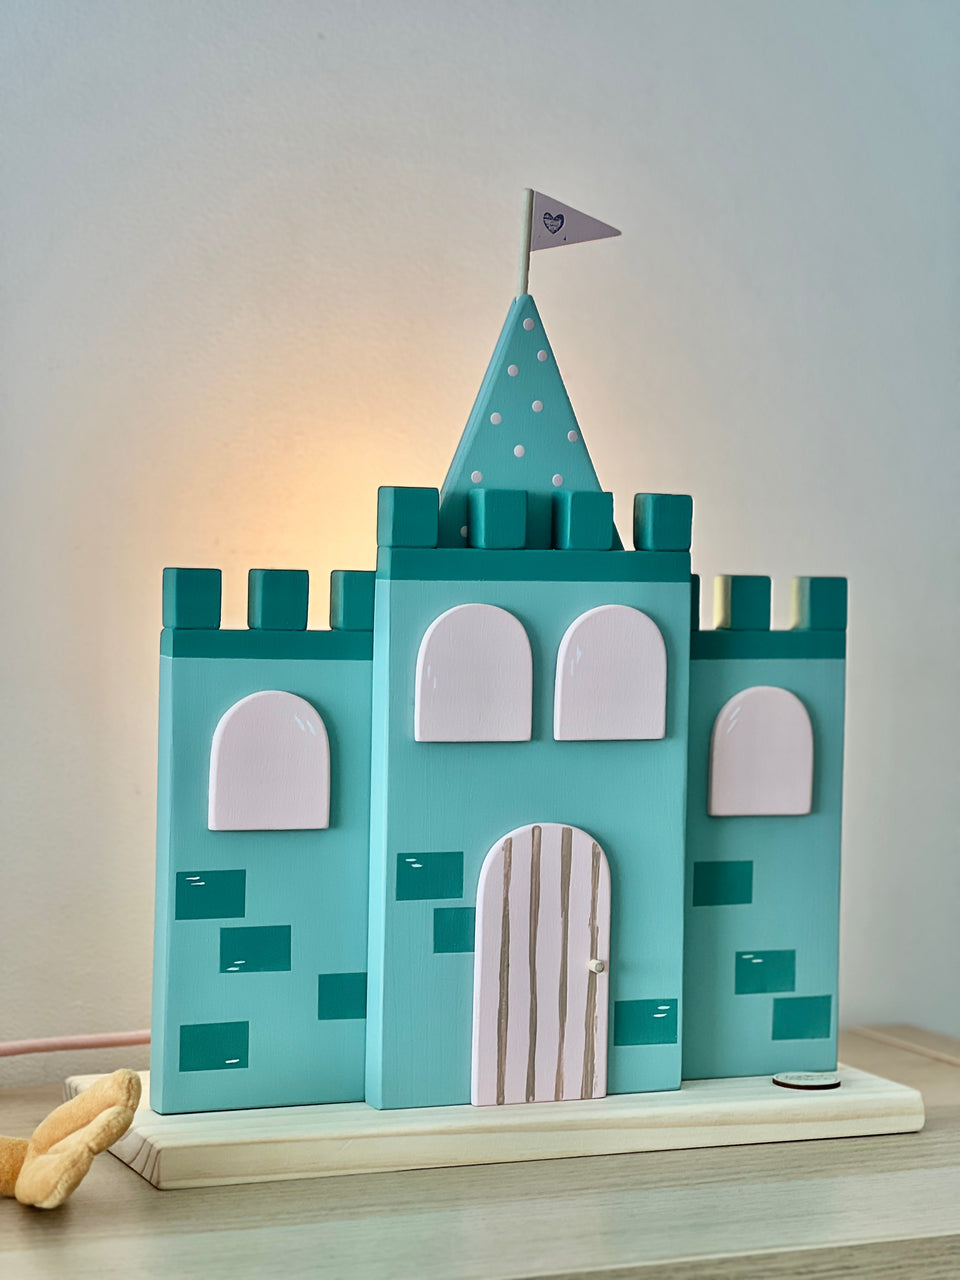 Candeeiro "Castelo" - Lamp light castle